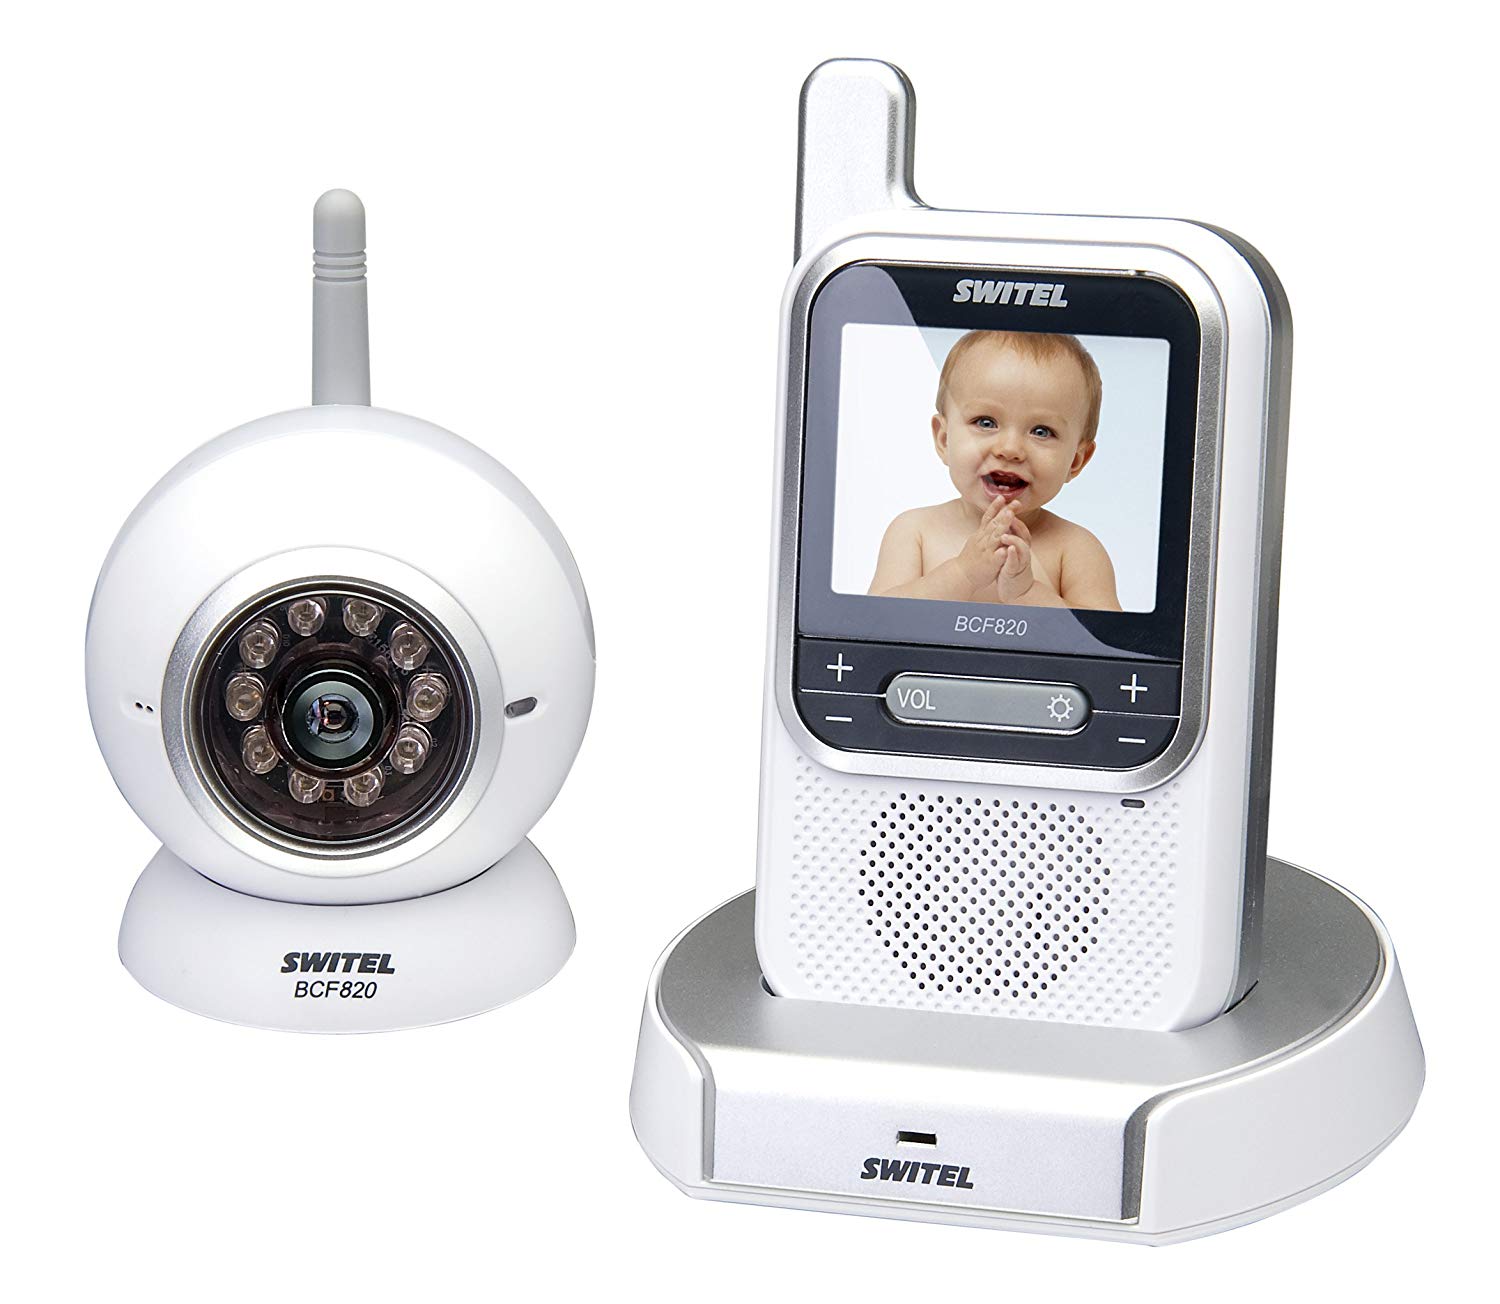 Switel BCF820 Motif Video Baby Monitor Wireless AV System with Digital Transmission